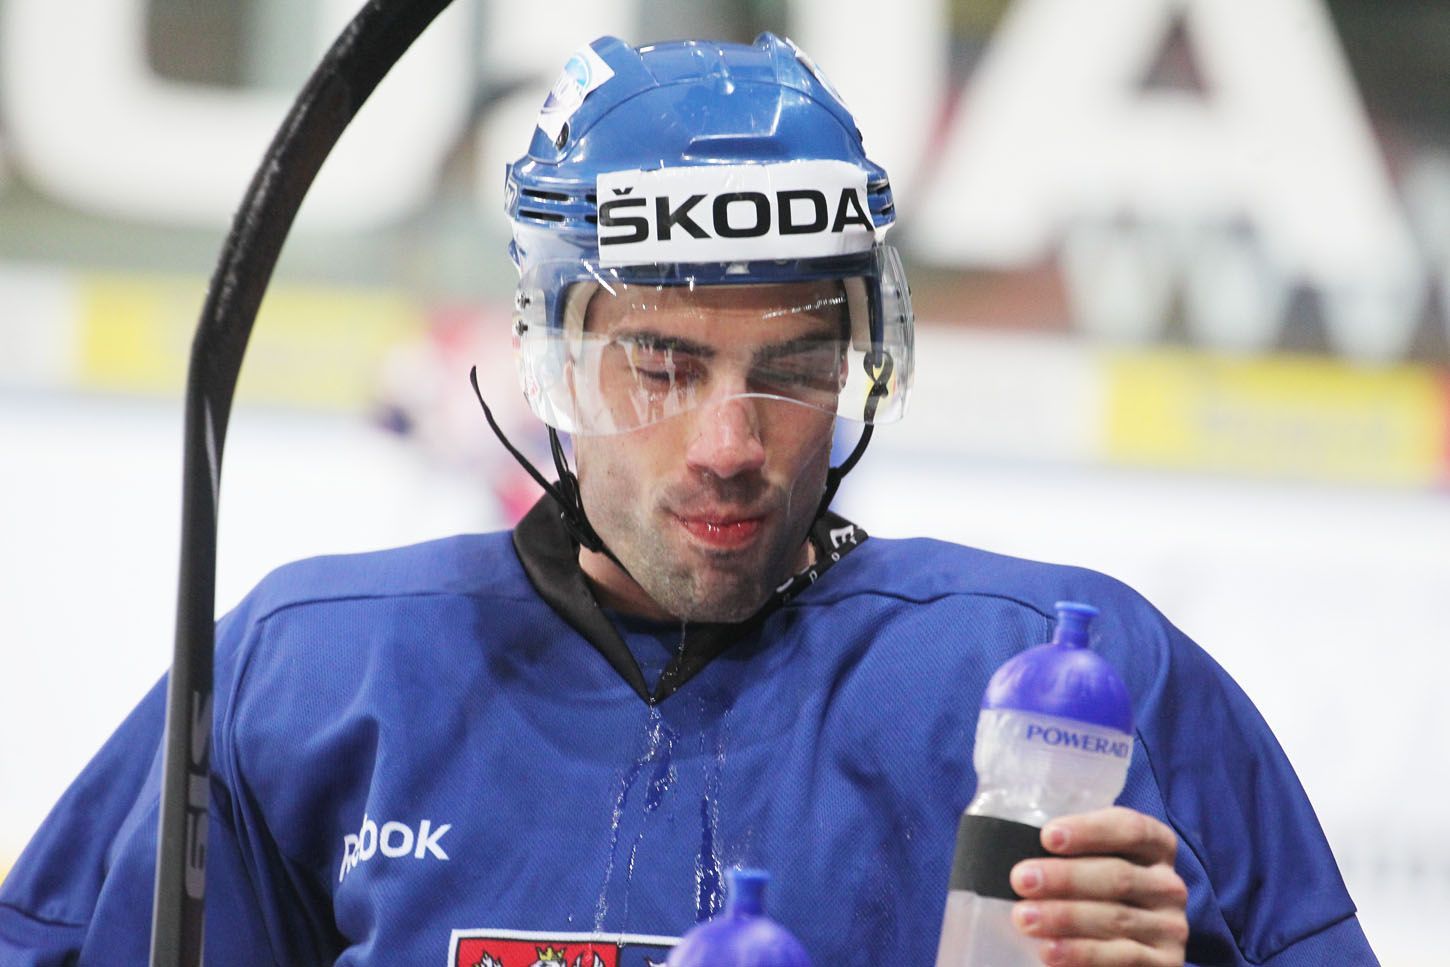 Trénink české hokejové reprezentace (Zbyněk Irgl)